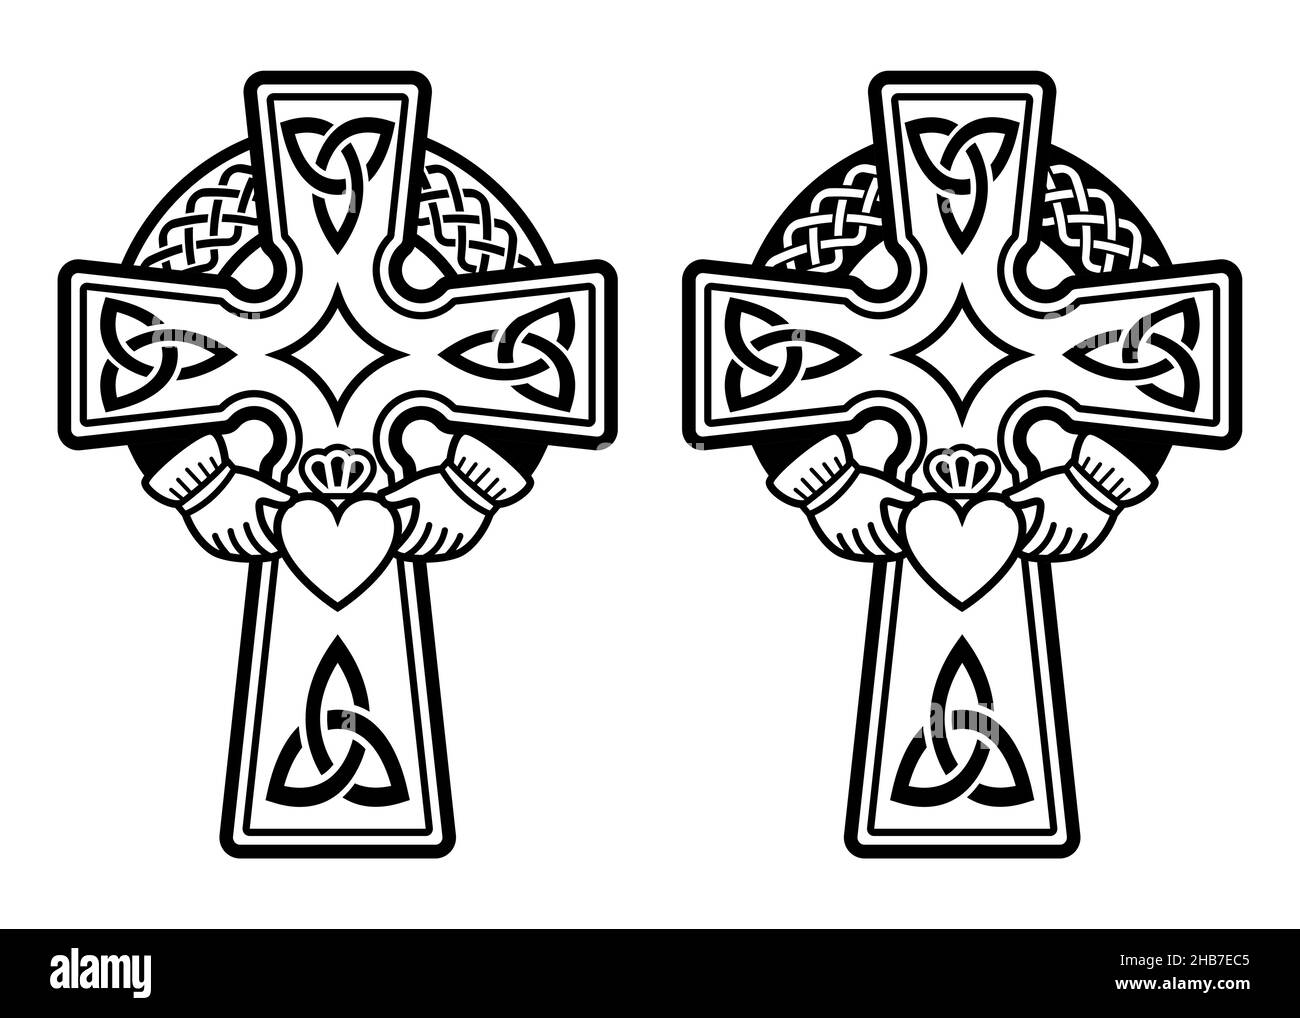 Croix celtique irlandaise avec bague Claddagh - coeur et mains vecteur design set - fête de la St Patrick en Irlande Illustration de Vecteur